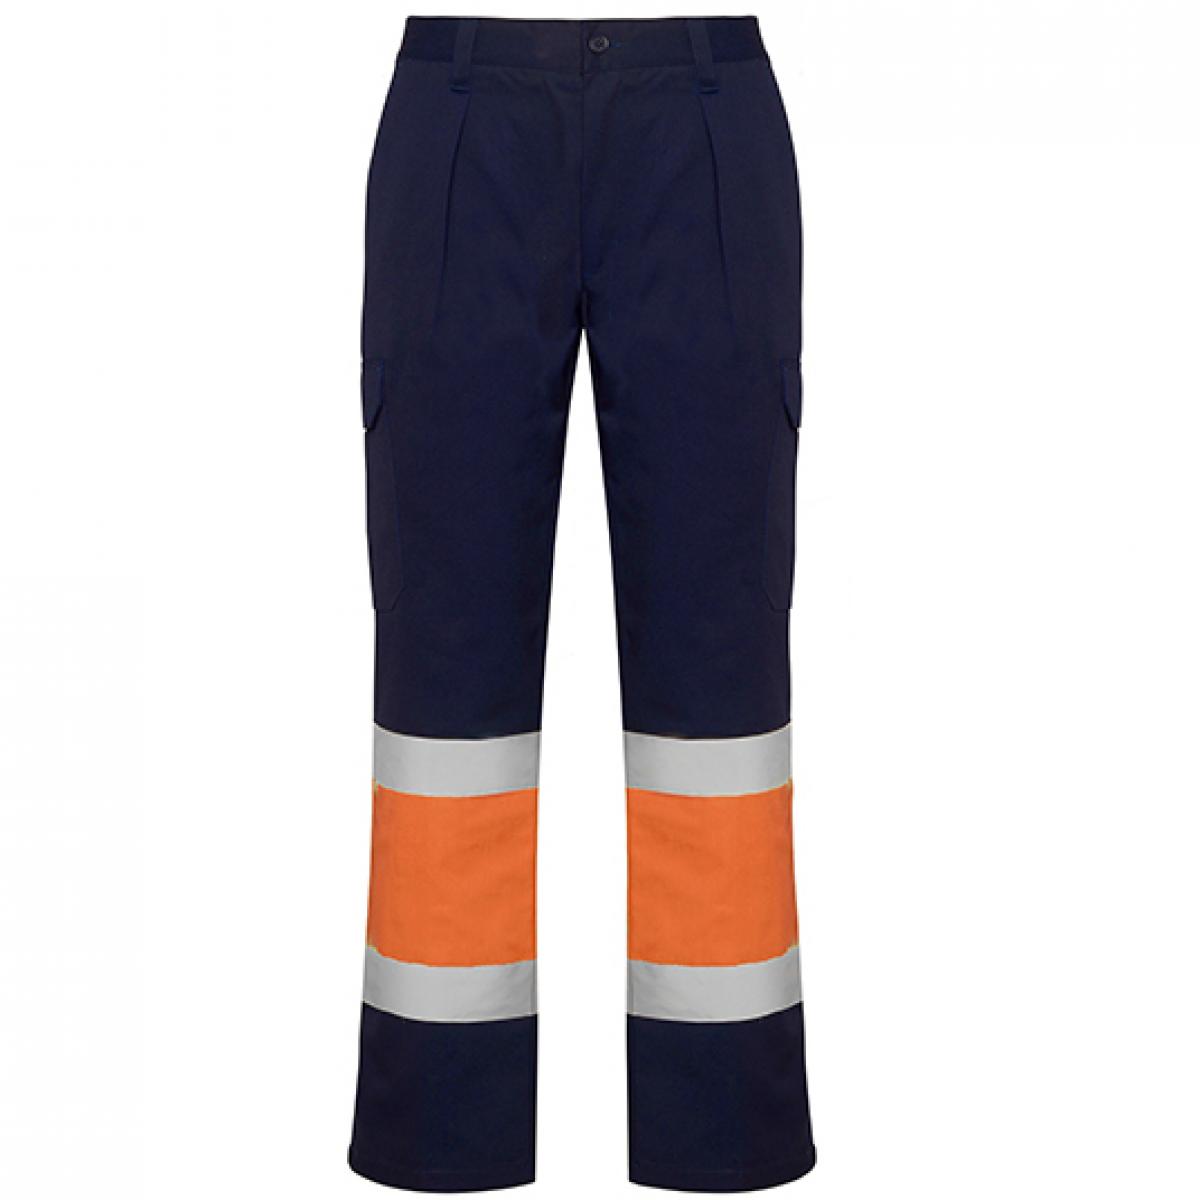 Hersteller: Roly Workwear Herstellernummer: HV9301 Artikelbezeichnung: Soan Hi-Viz Trousers - Arbeitshose mit Reflektionsstreifen Farbe: Navy Blue 55/Fluor Orange 223